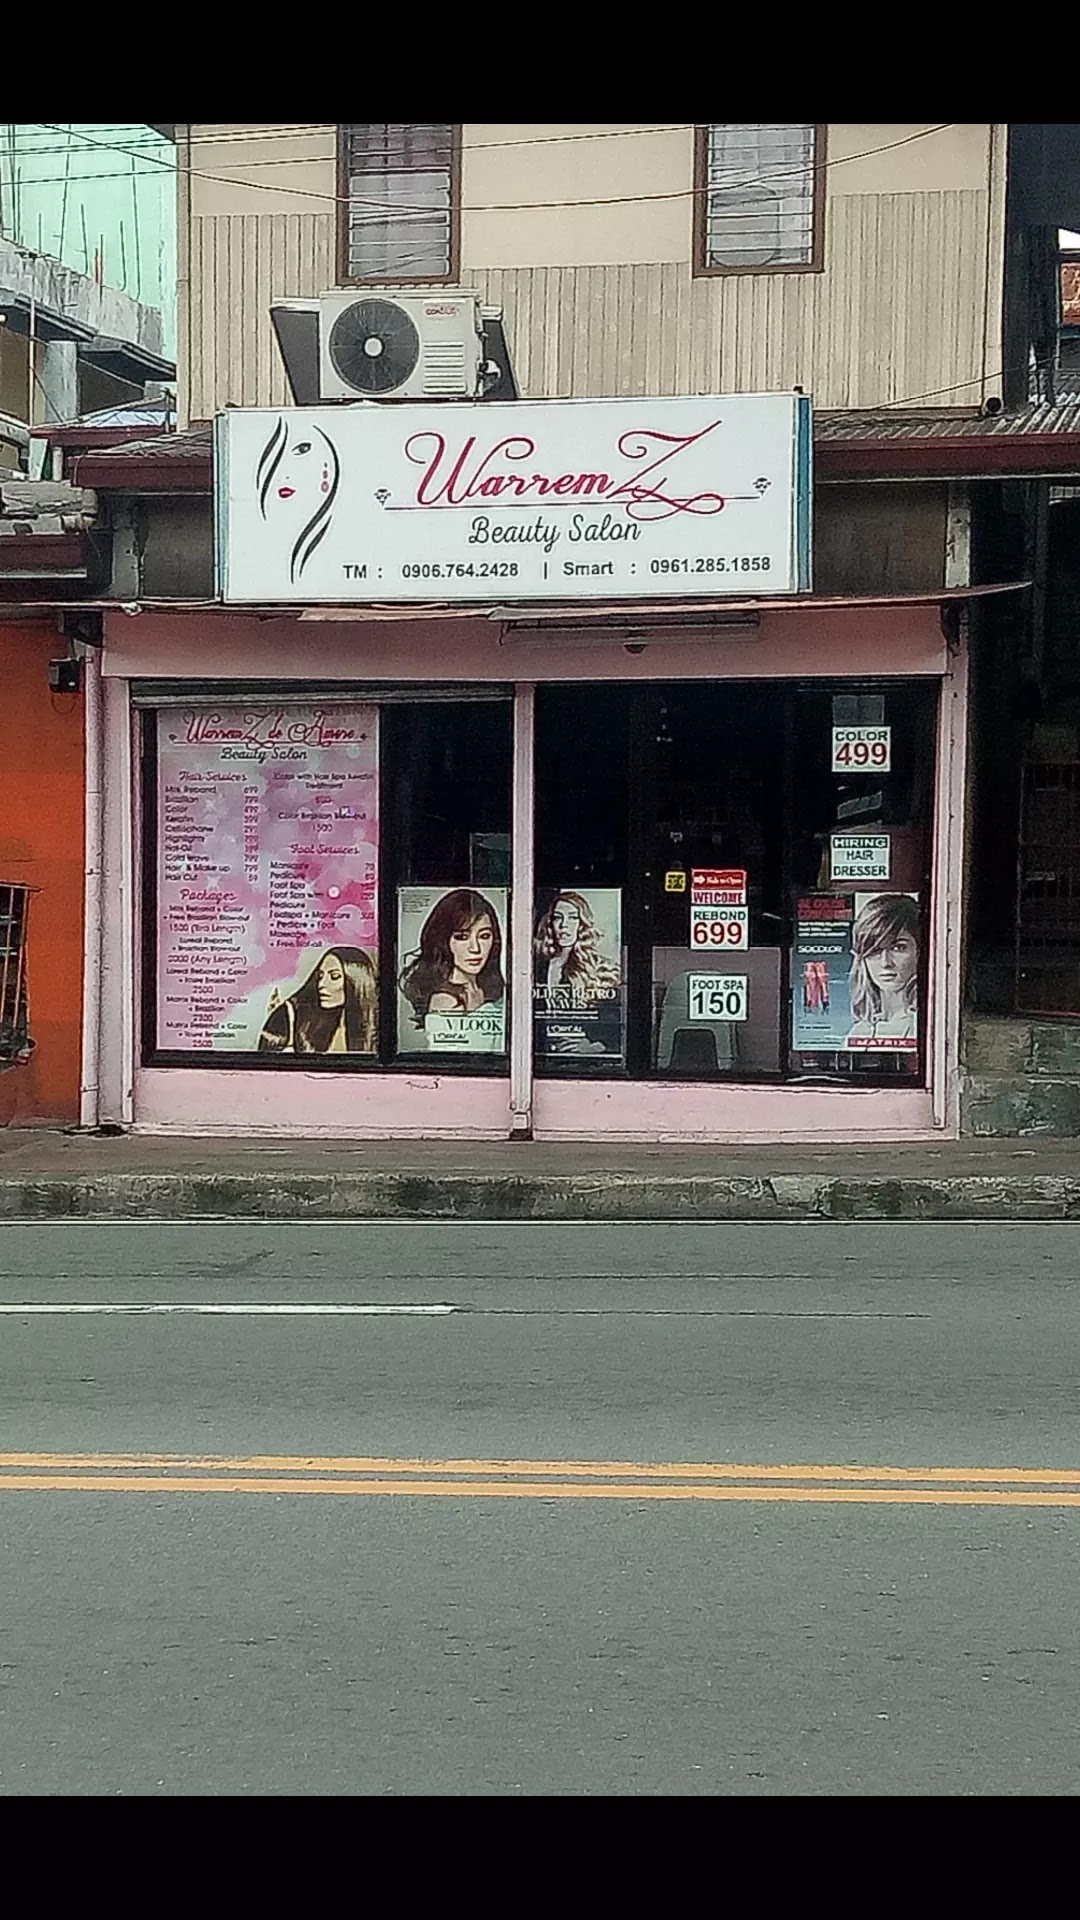 Warremz De Amore Beauty Salon